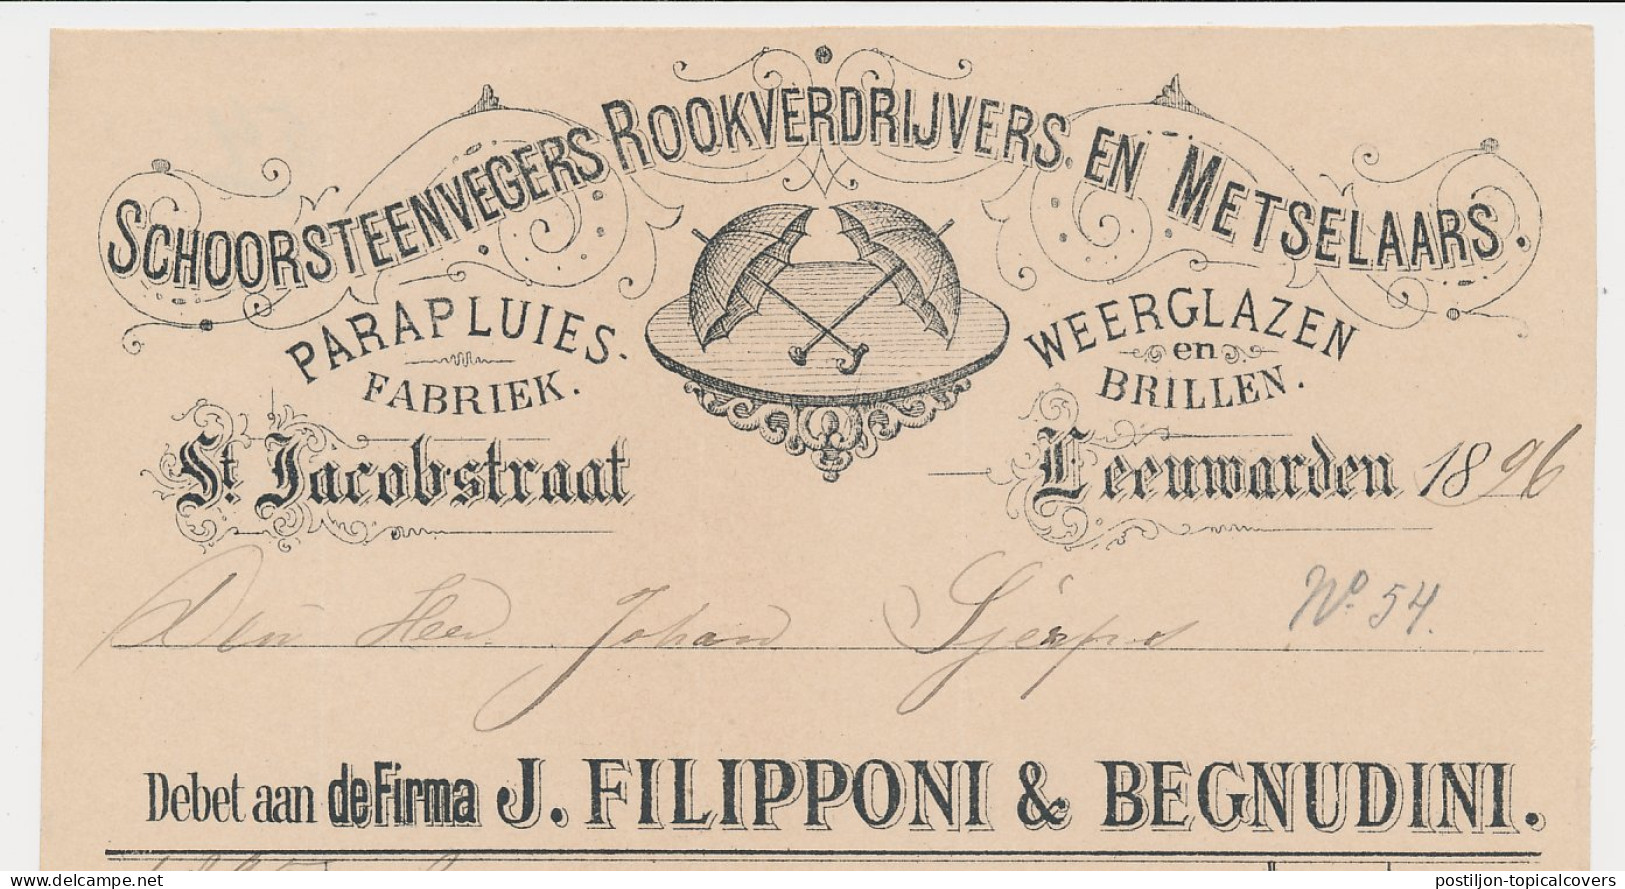 Nota Leeuwarden 1896 - Parapluies - Weerglazen - Brillen - Niederlande